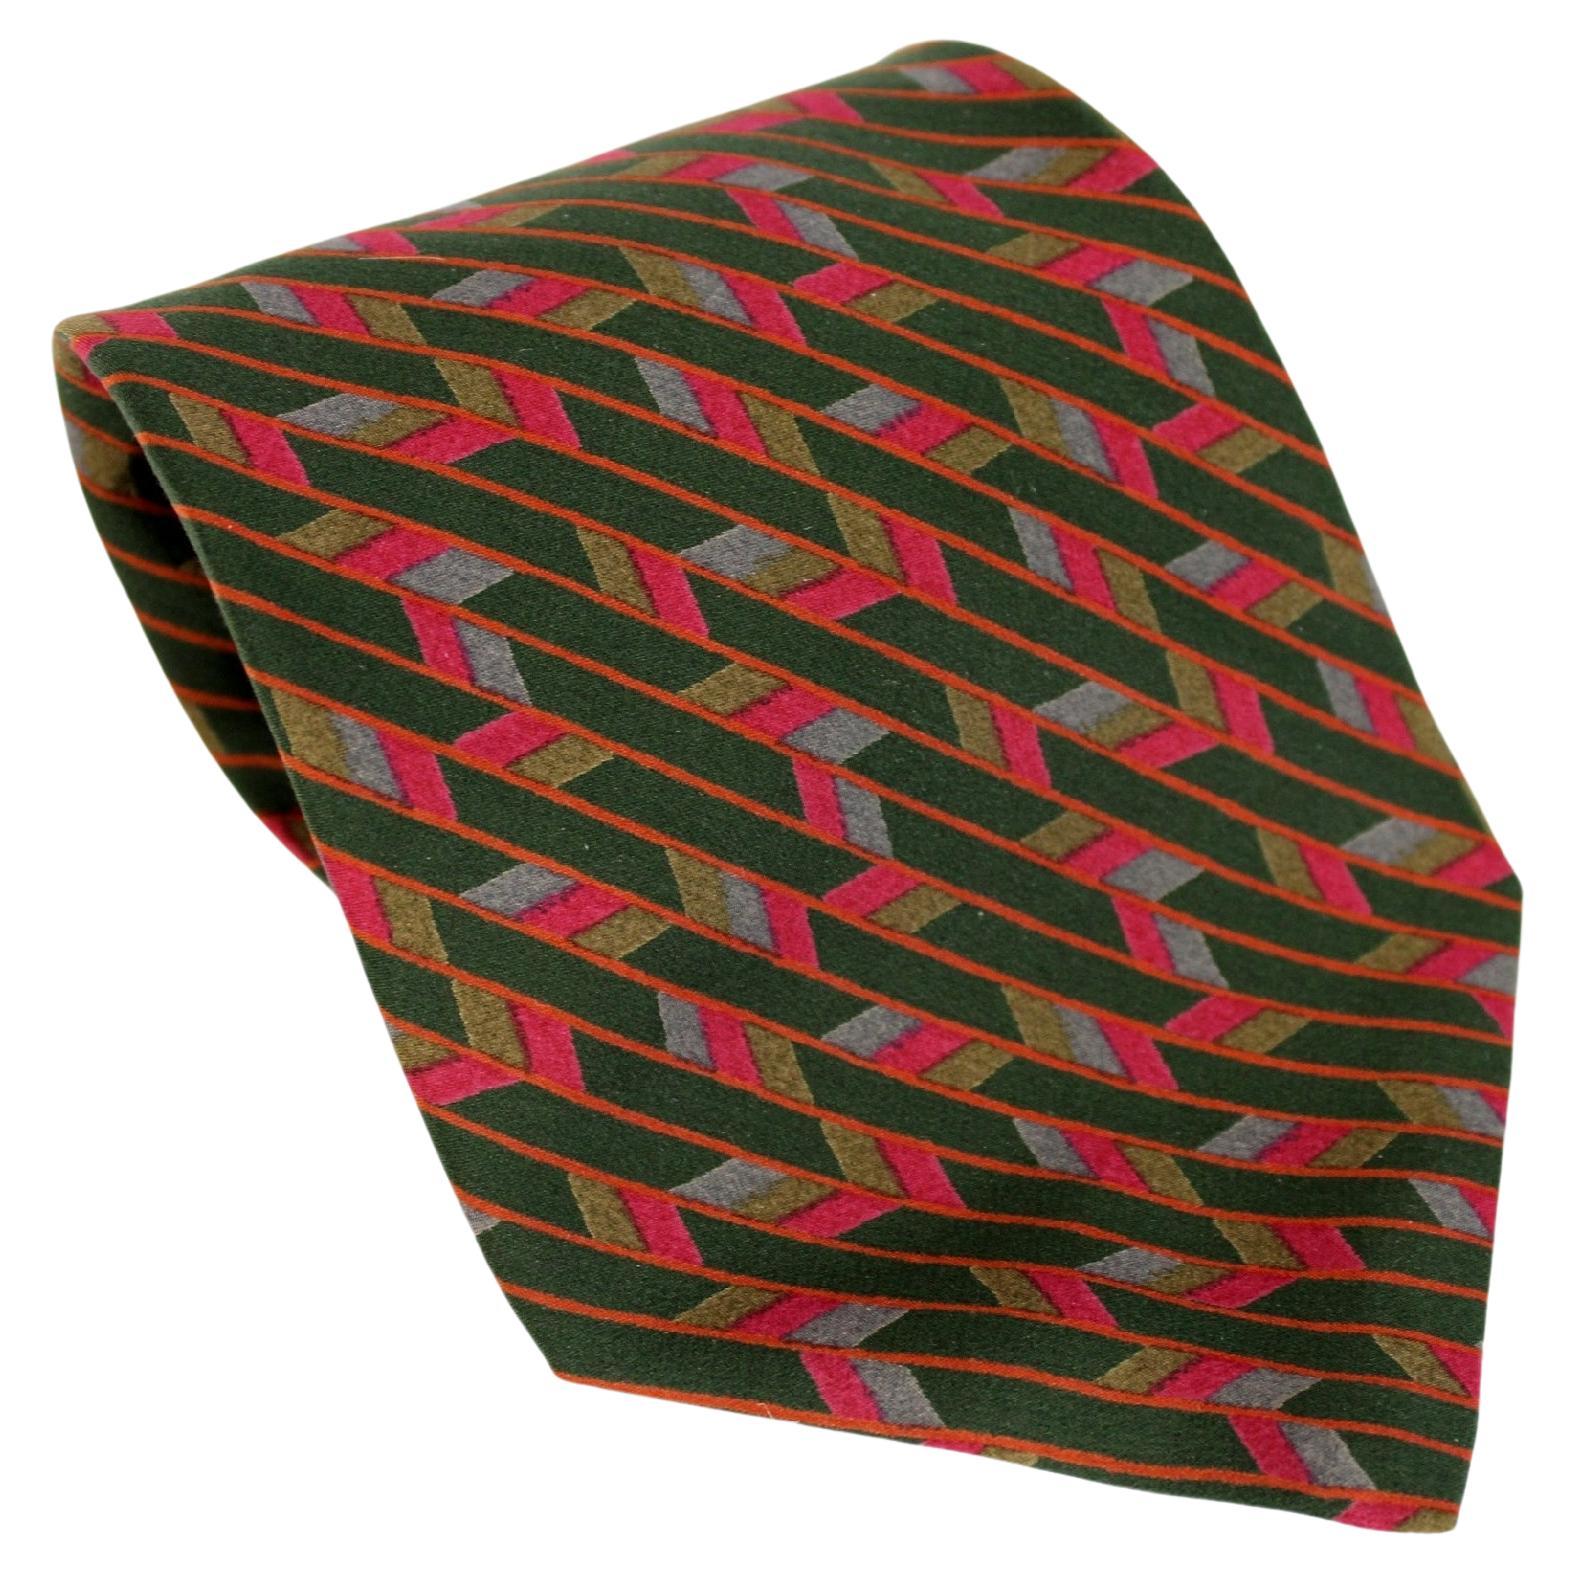 Yves Saint Laurent - Cravate en soie géométrique rouge et verte